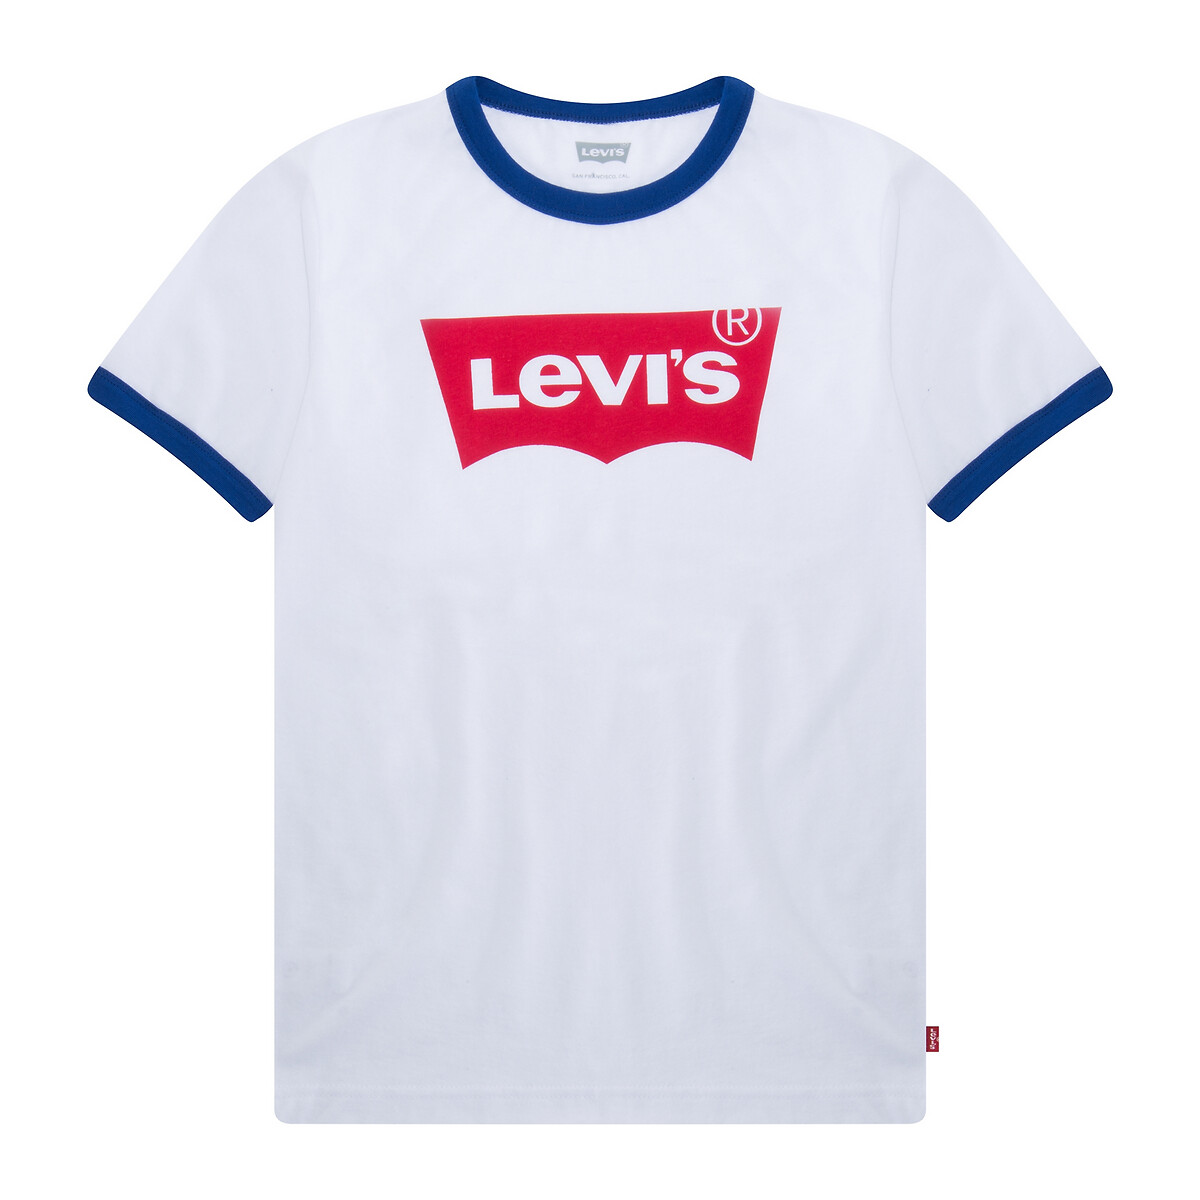 Levis Kids T-shirt, 3 - 16 anos